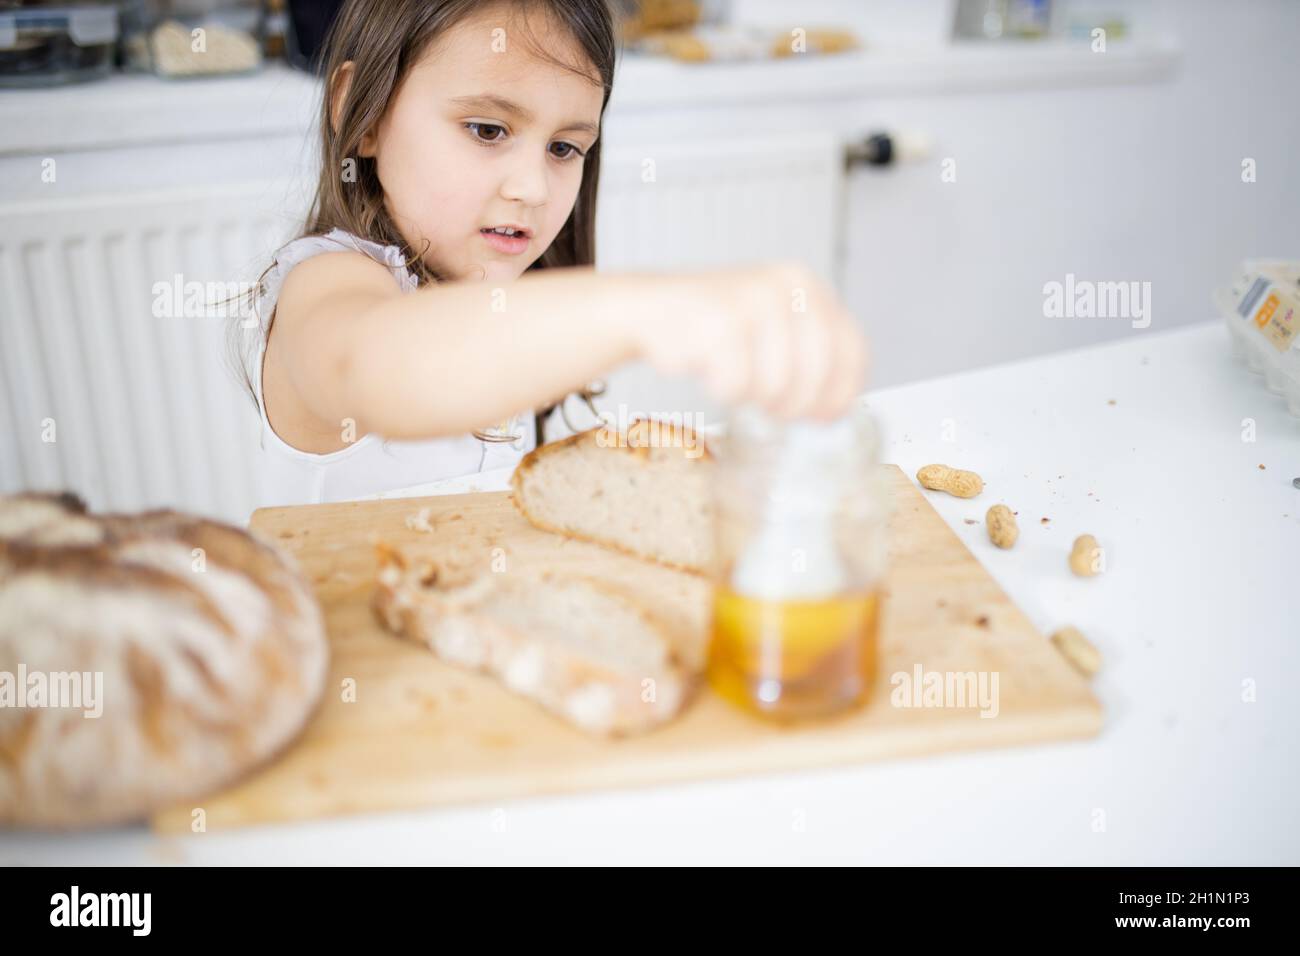 Pequeña niña recogiendo miel del tarro junto a una rebanada de pan encima  de la tabla de madera. Niño pequeño en la mesa blanca pegando una cuchara  en el tarro de miel.